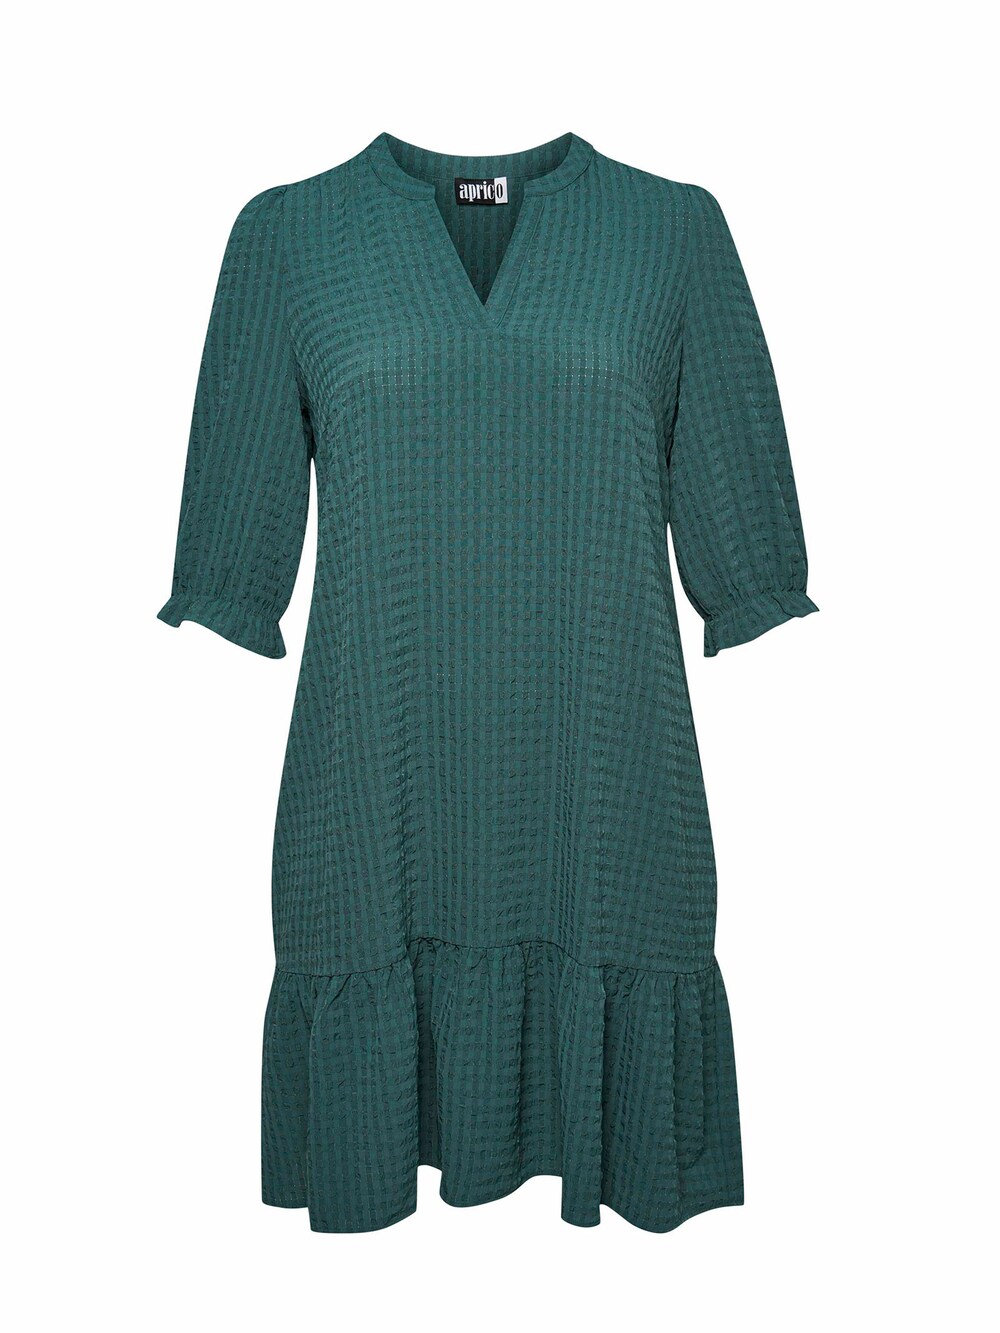 Рубашка-платье Aprico, трава зеленая рубашка yoek трава зеленая